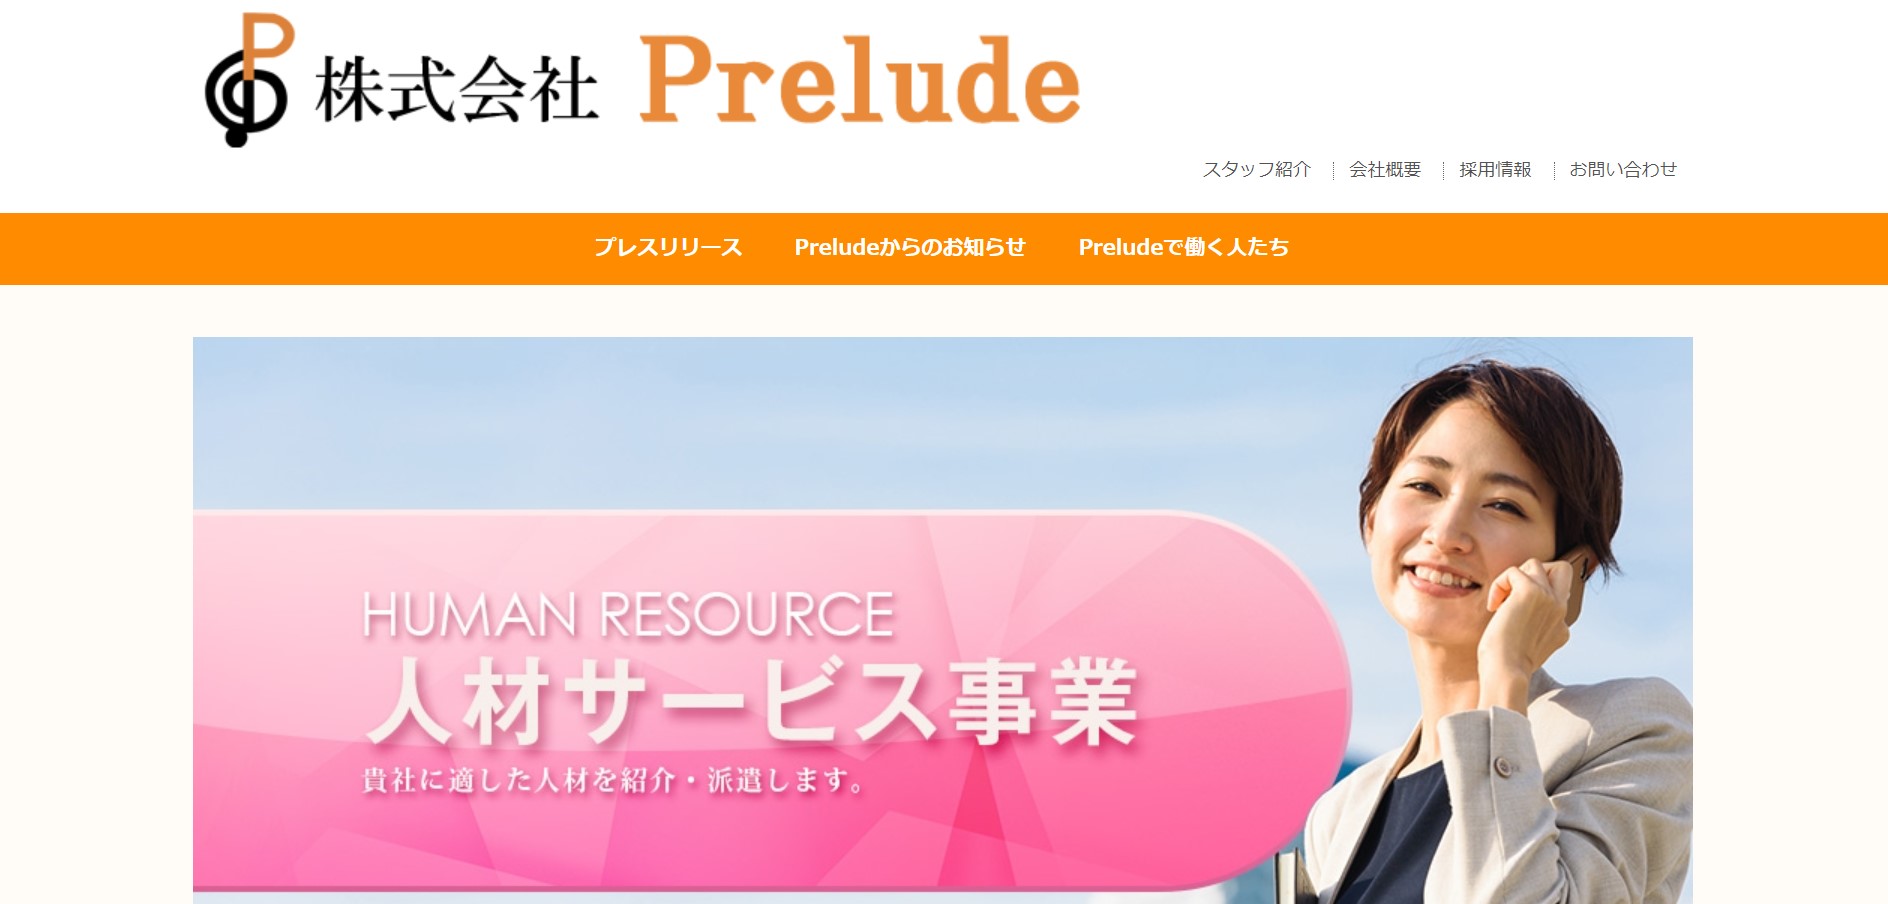 株式会社Prelude